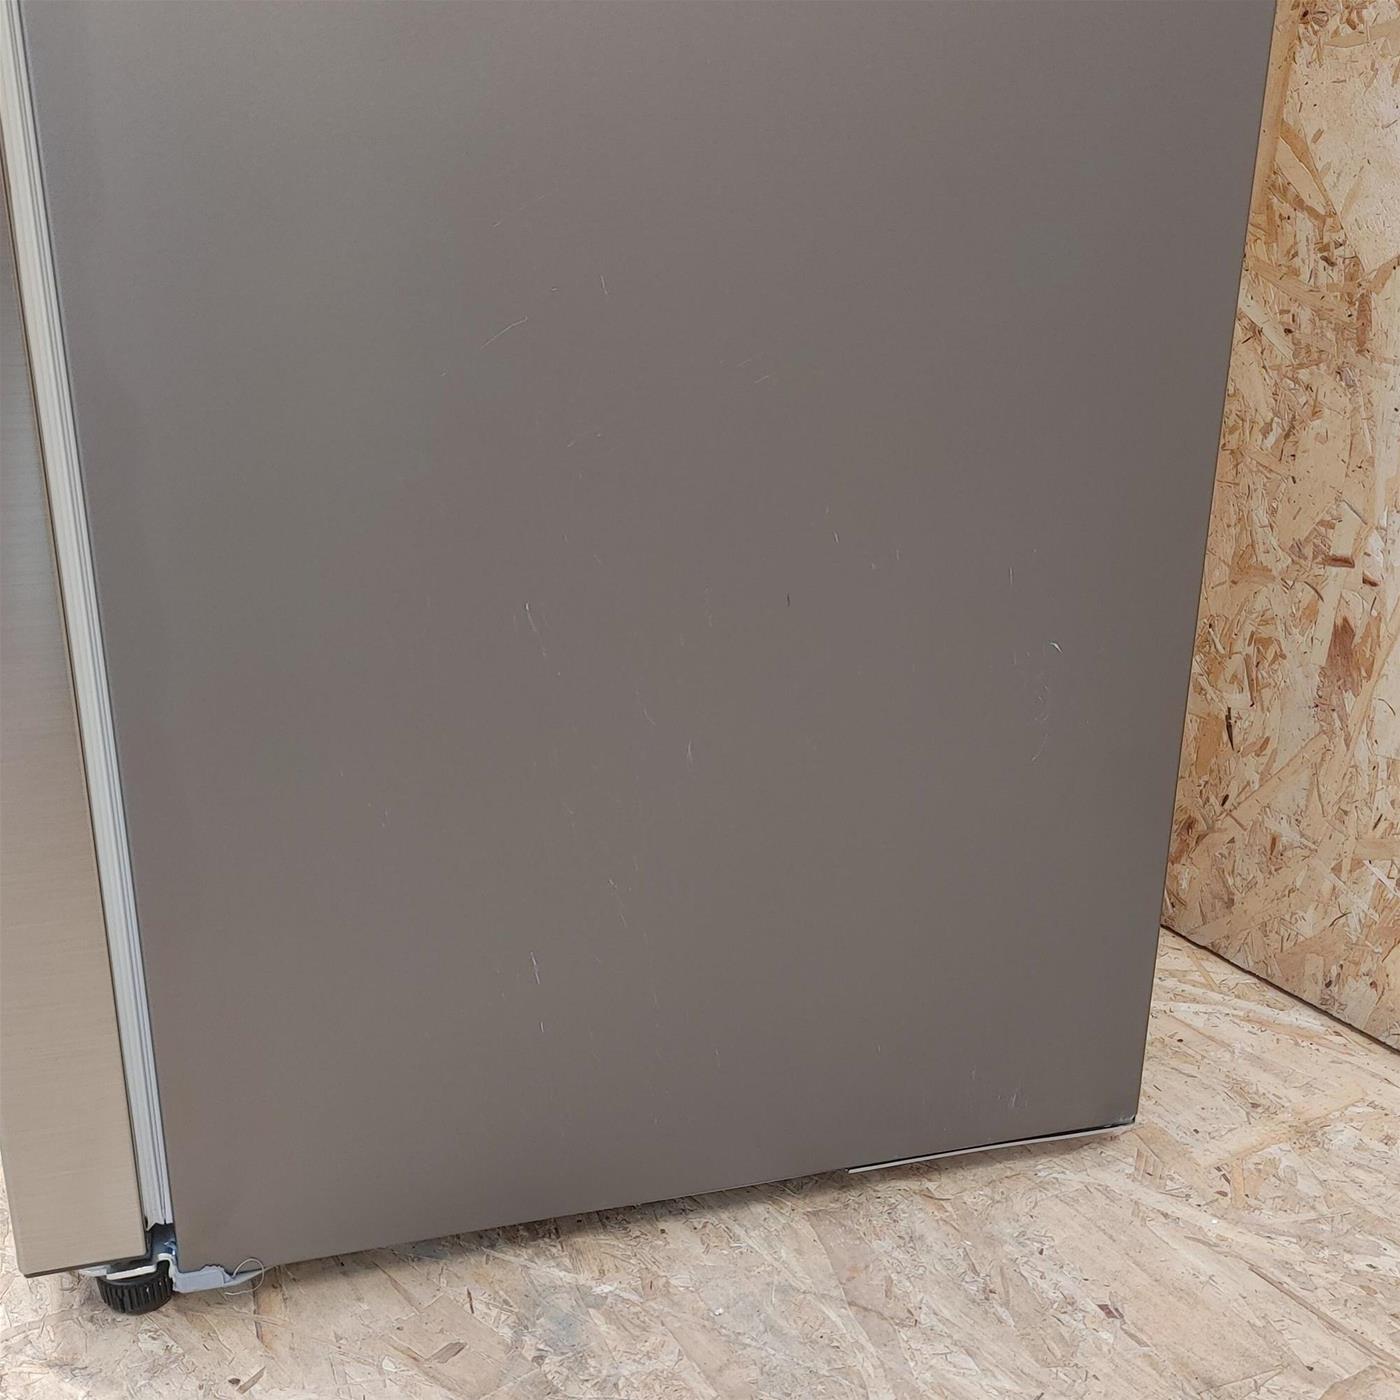 Samsung RT35K553PS9 frigorifero con congelatore Libera installazione E Acciaio inossidabile, Total No Frost